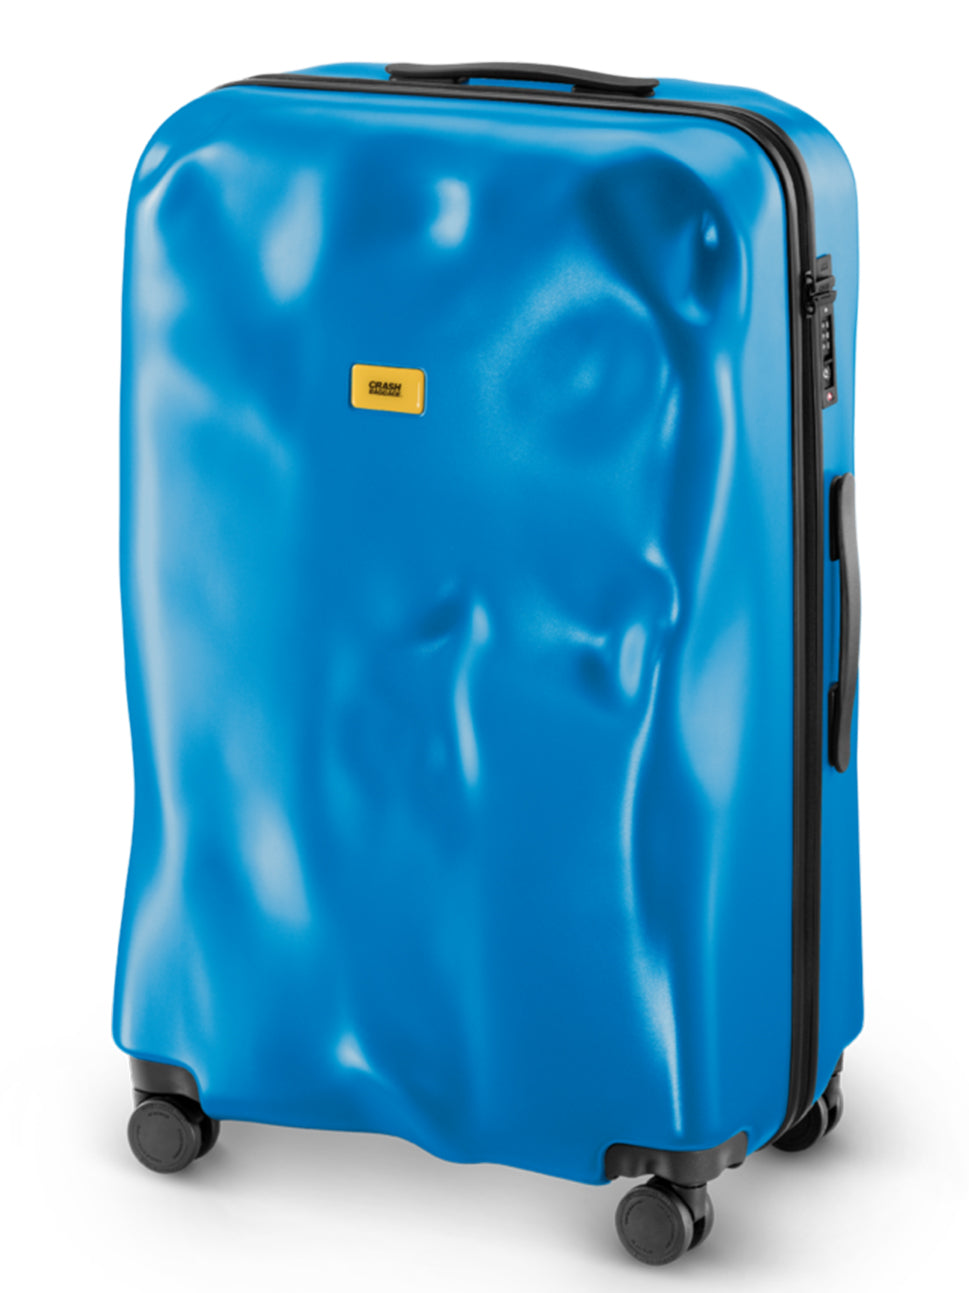 Crash Baggage Icon 4 Wheel Luggage Trolley Laguna Blue 29" Polycarbonate